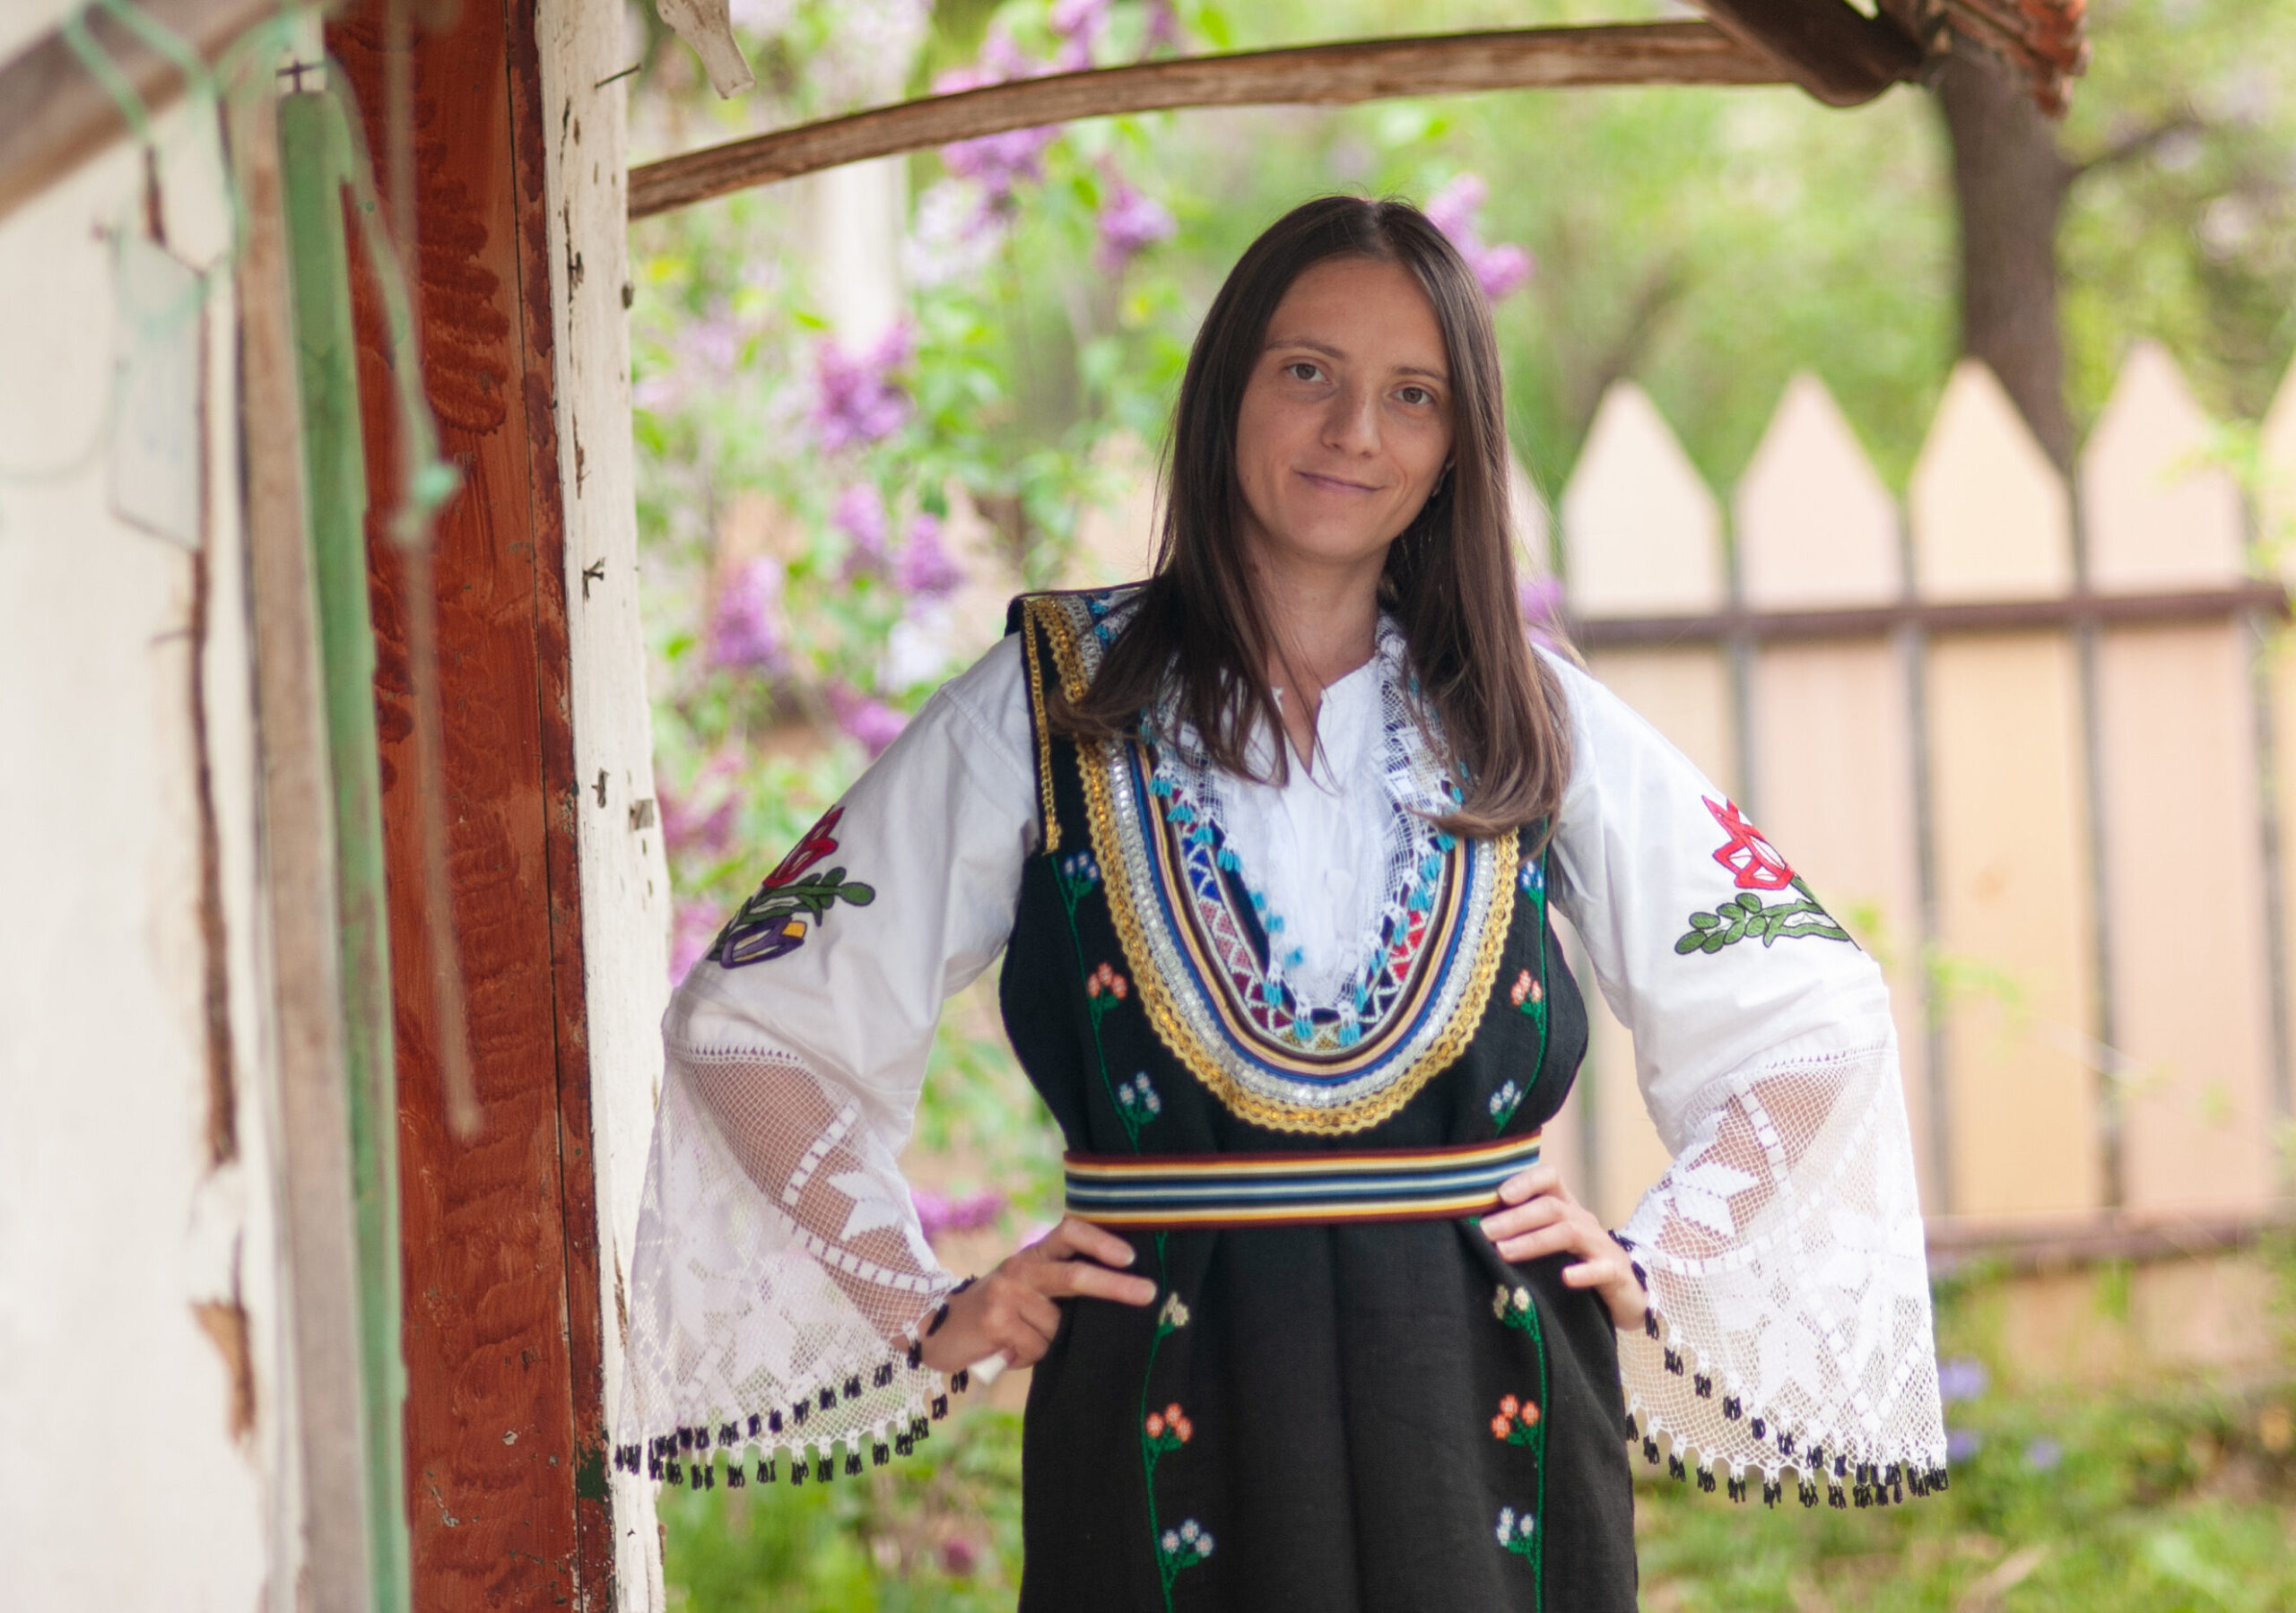 Balkanpersoon in kleding uit de Balkan